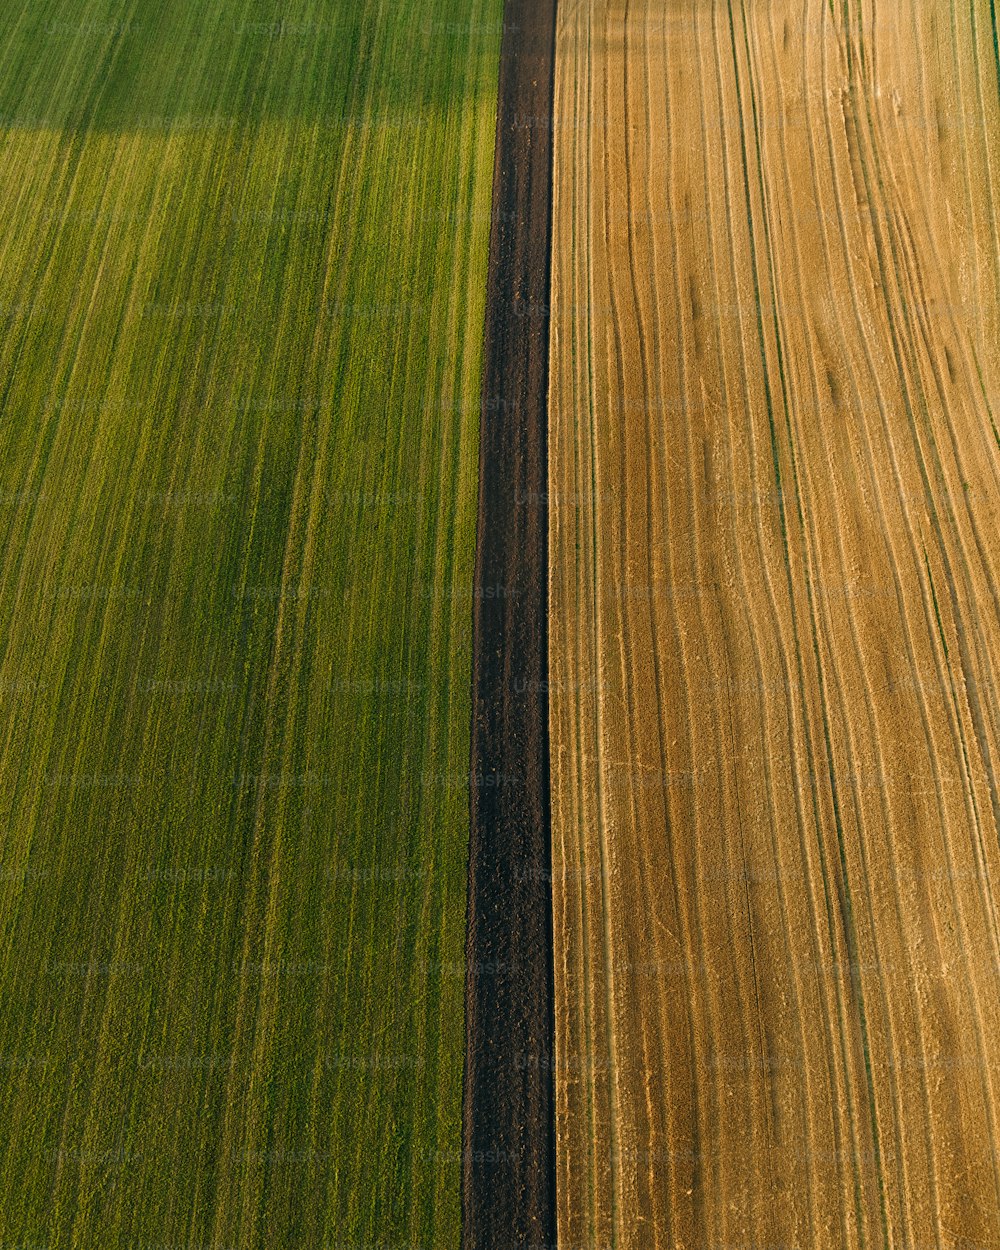 une vue aérienne d’un champ agricole avec deux rangées d’herbe verte